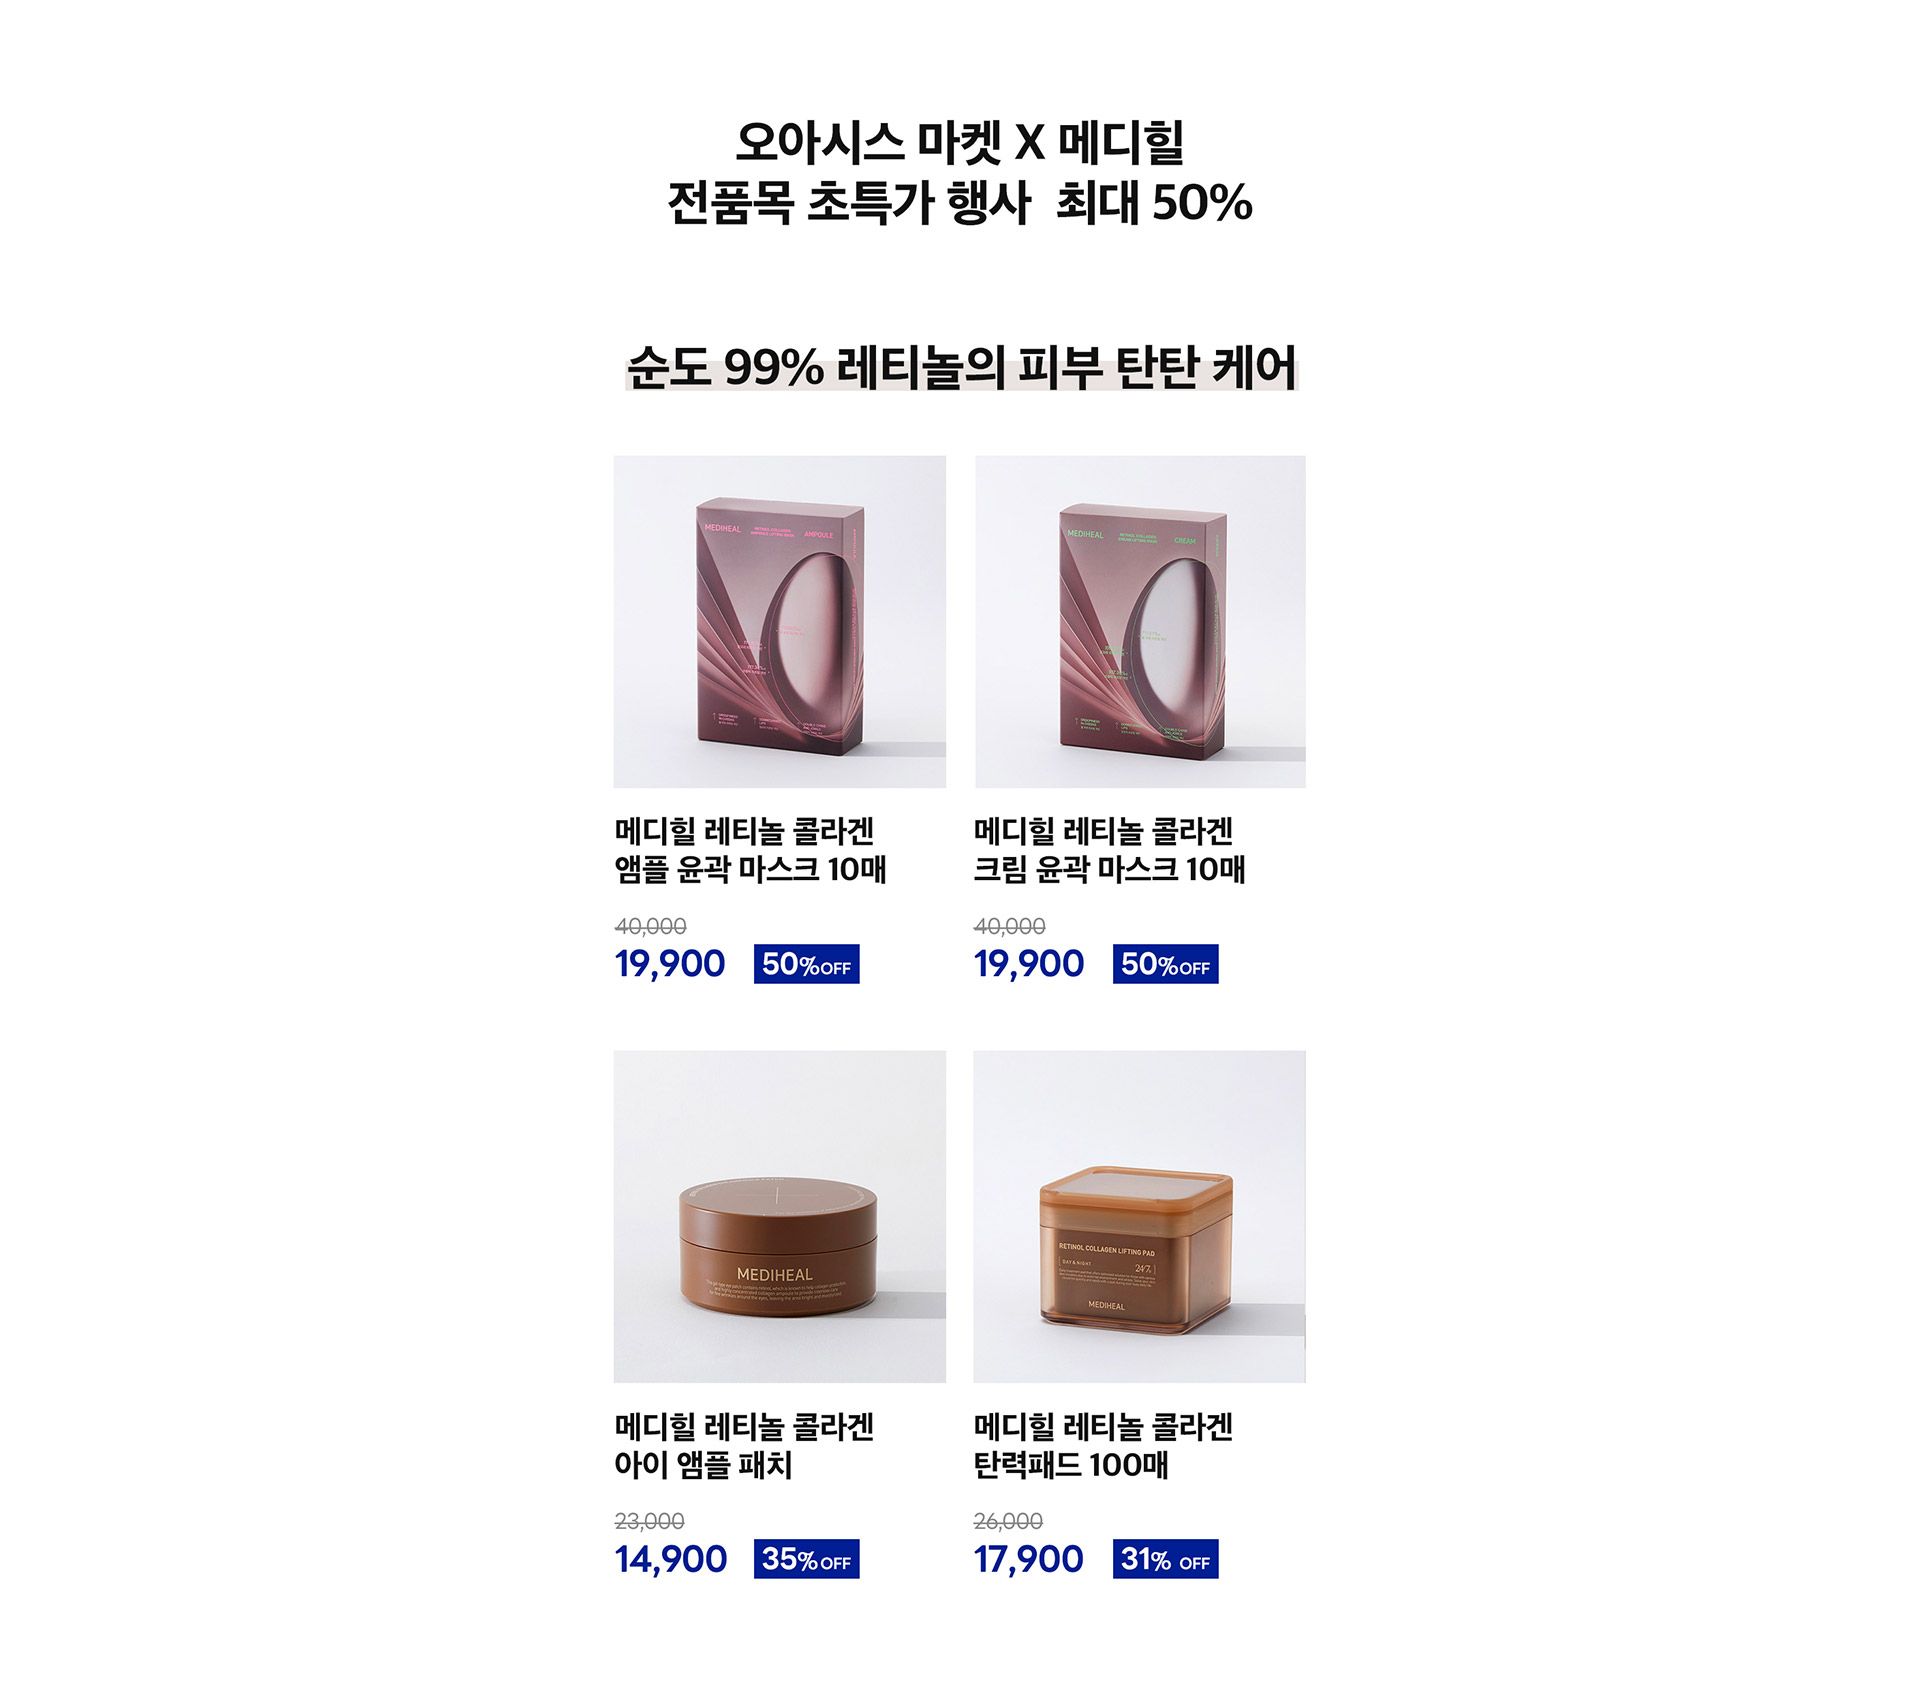 오아시스마켓 X 메디힐 전품목 초특가 행사 최대 50%